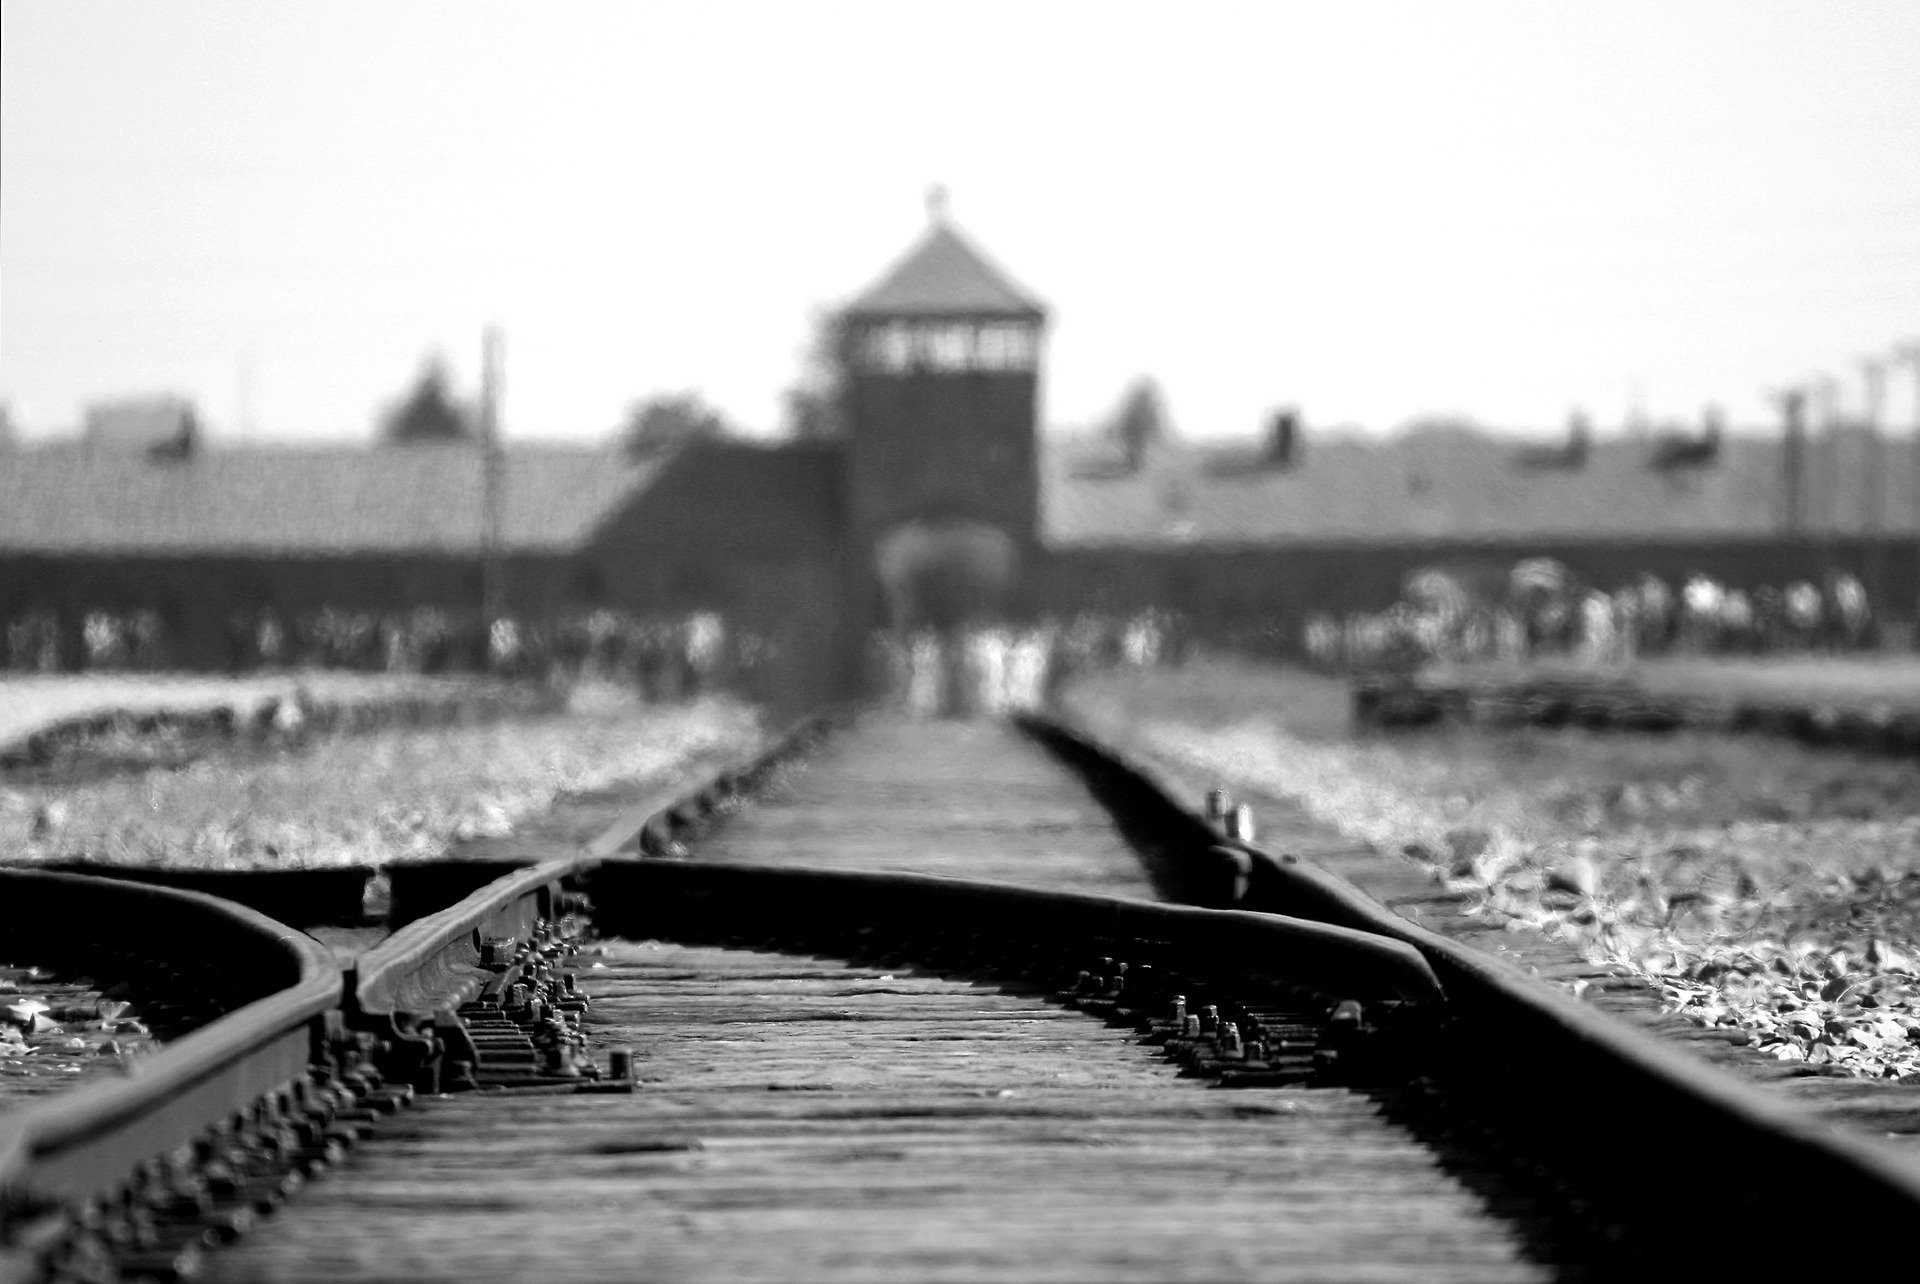 Rekordunterstützung durch die Stiftung Auschwitz-Birkenau für Erhaltung der Gedenkstätte